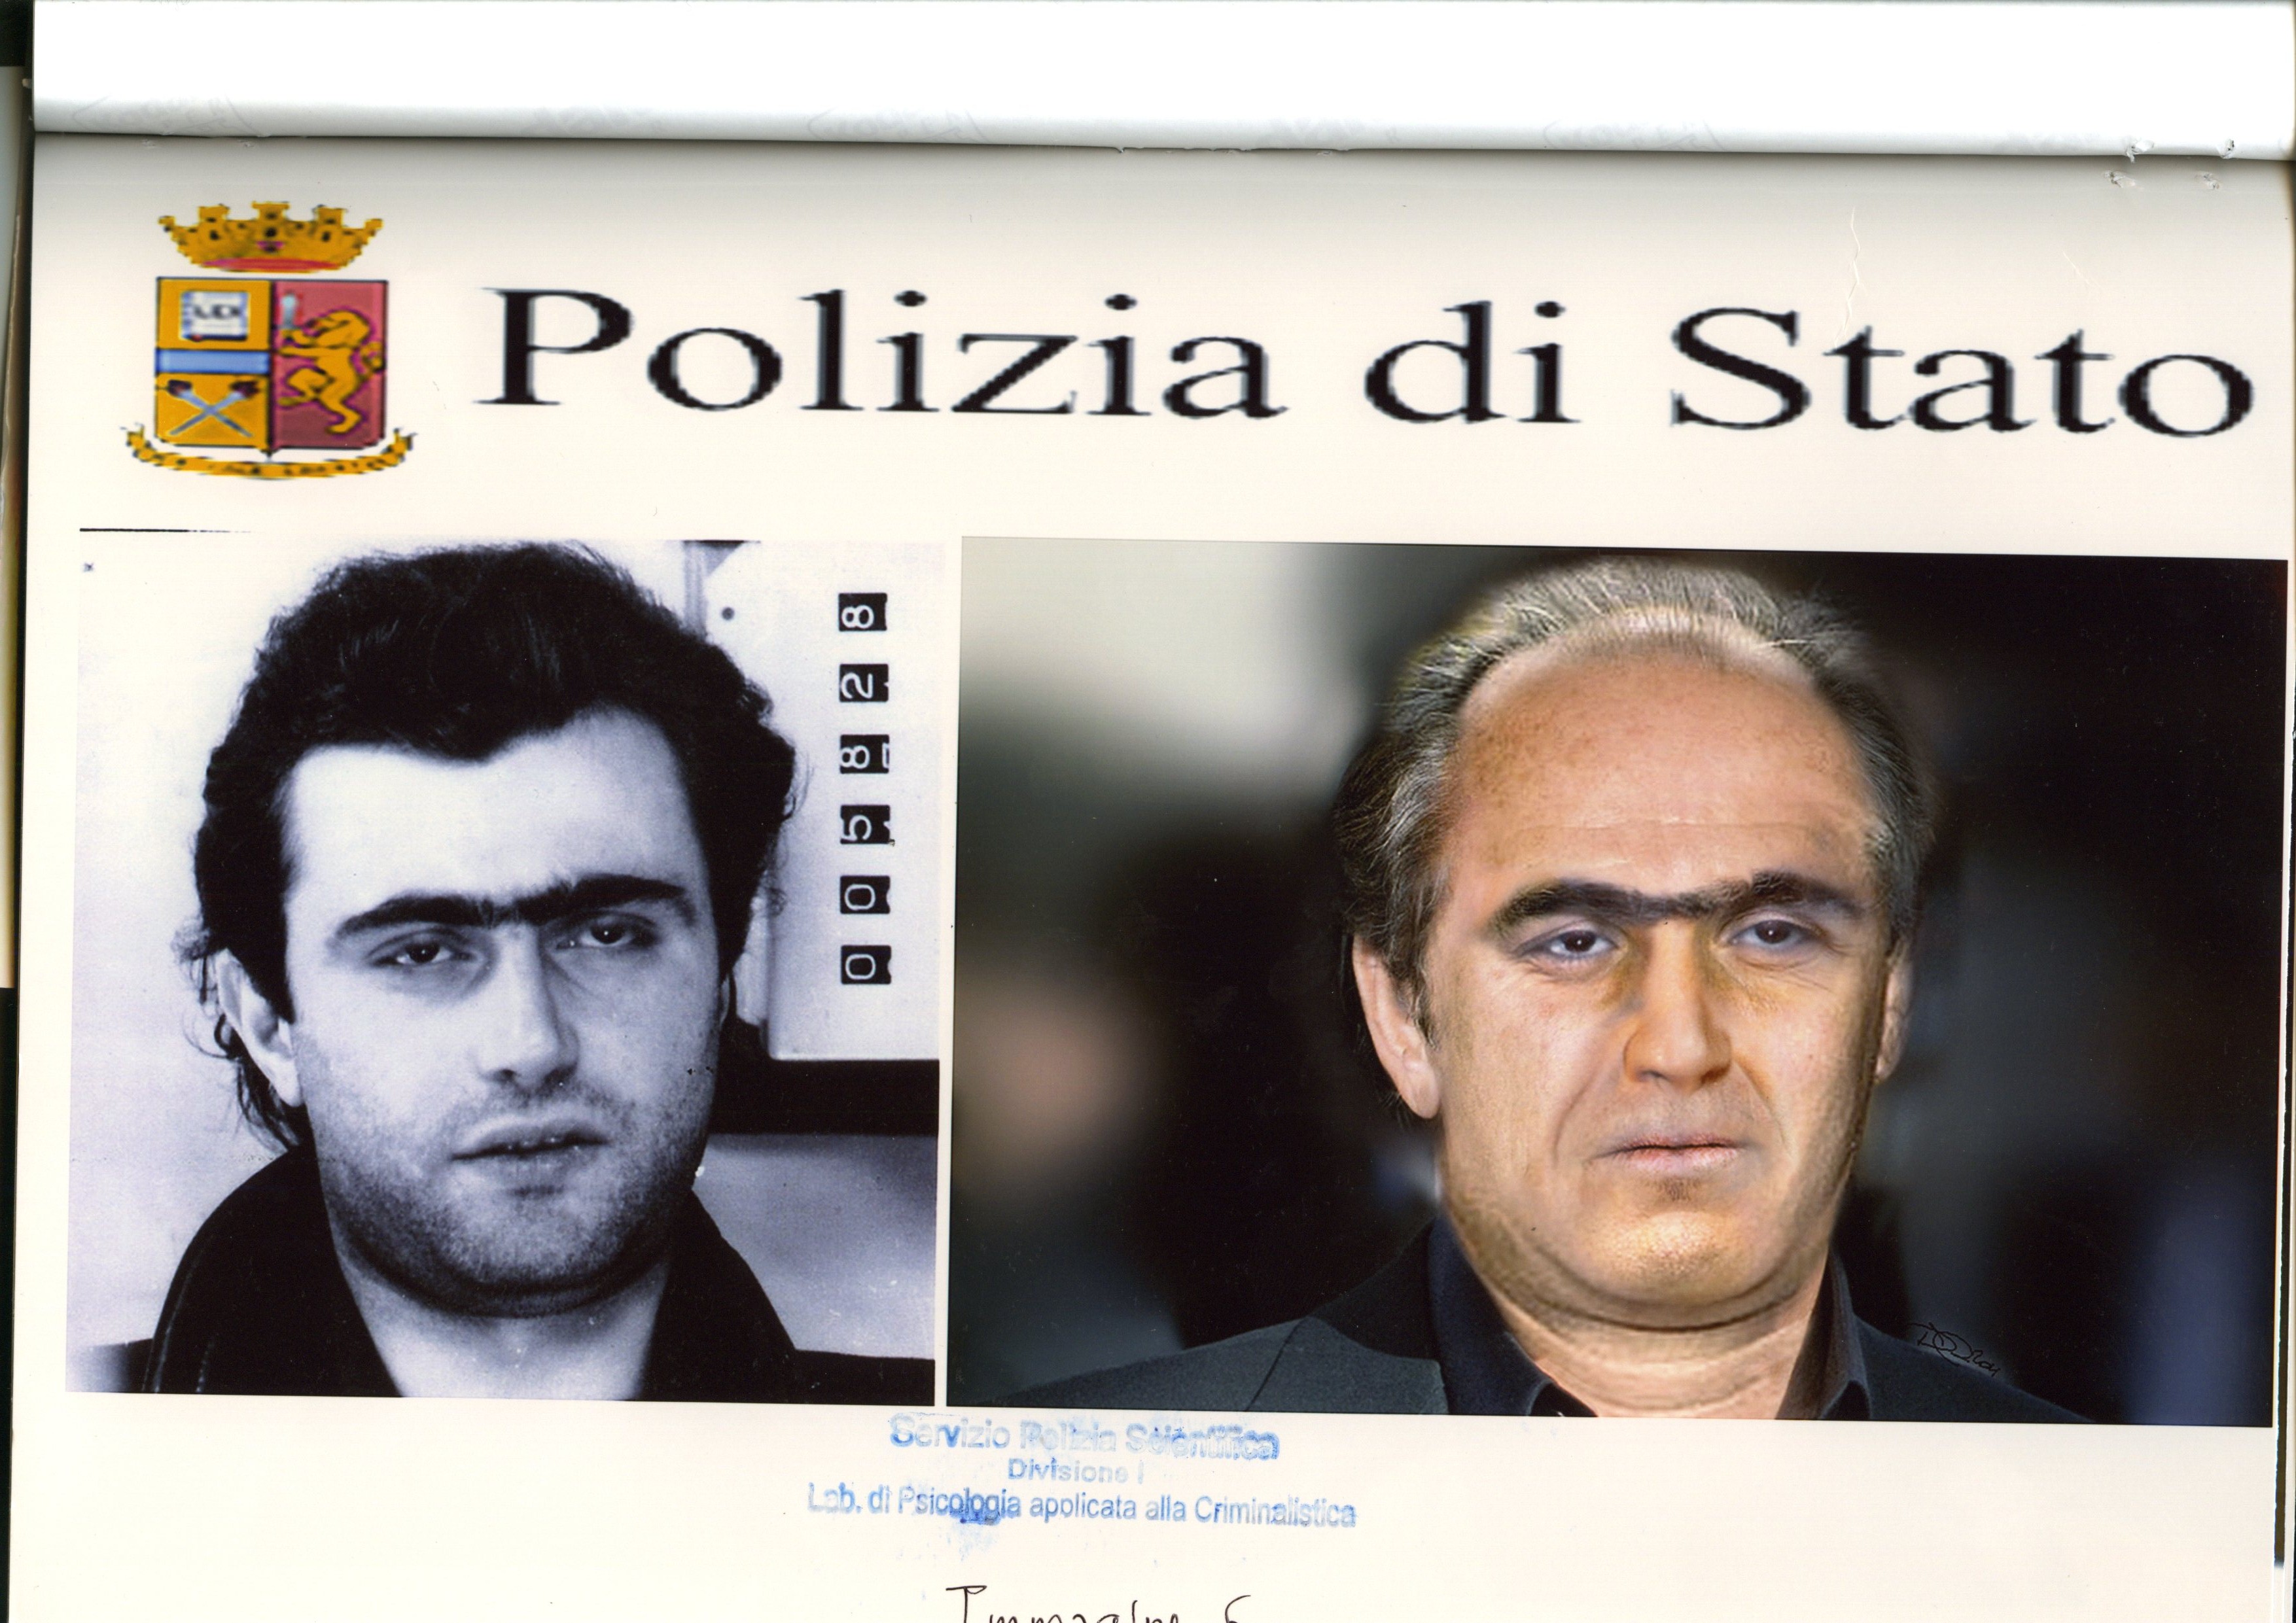 Италиански мафиот беше арестуван в Бразилия след 30-годишно издирване